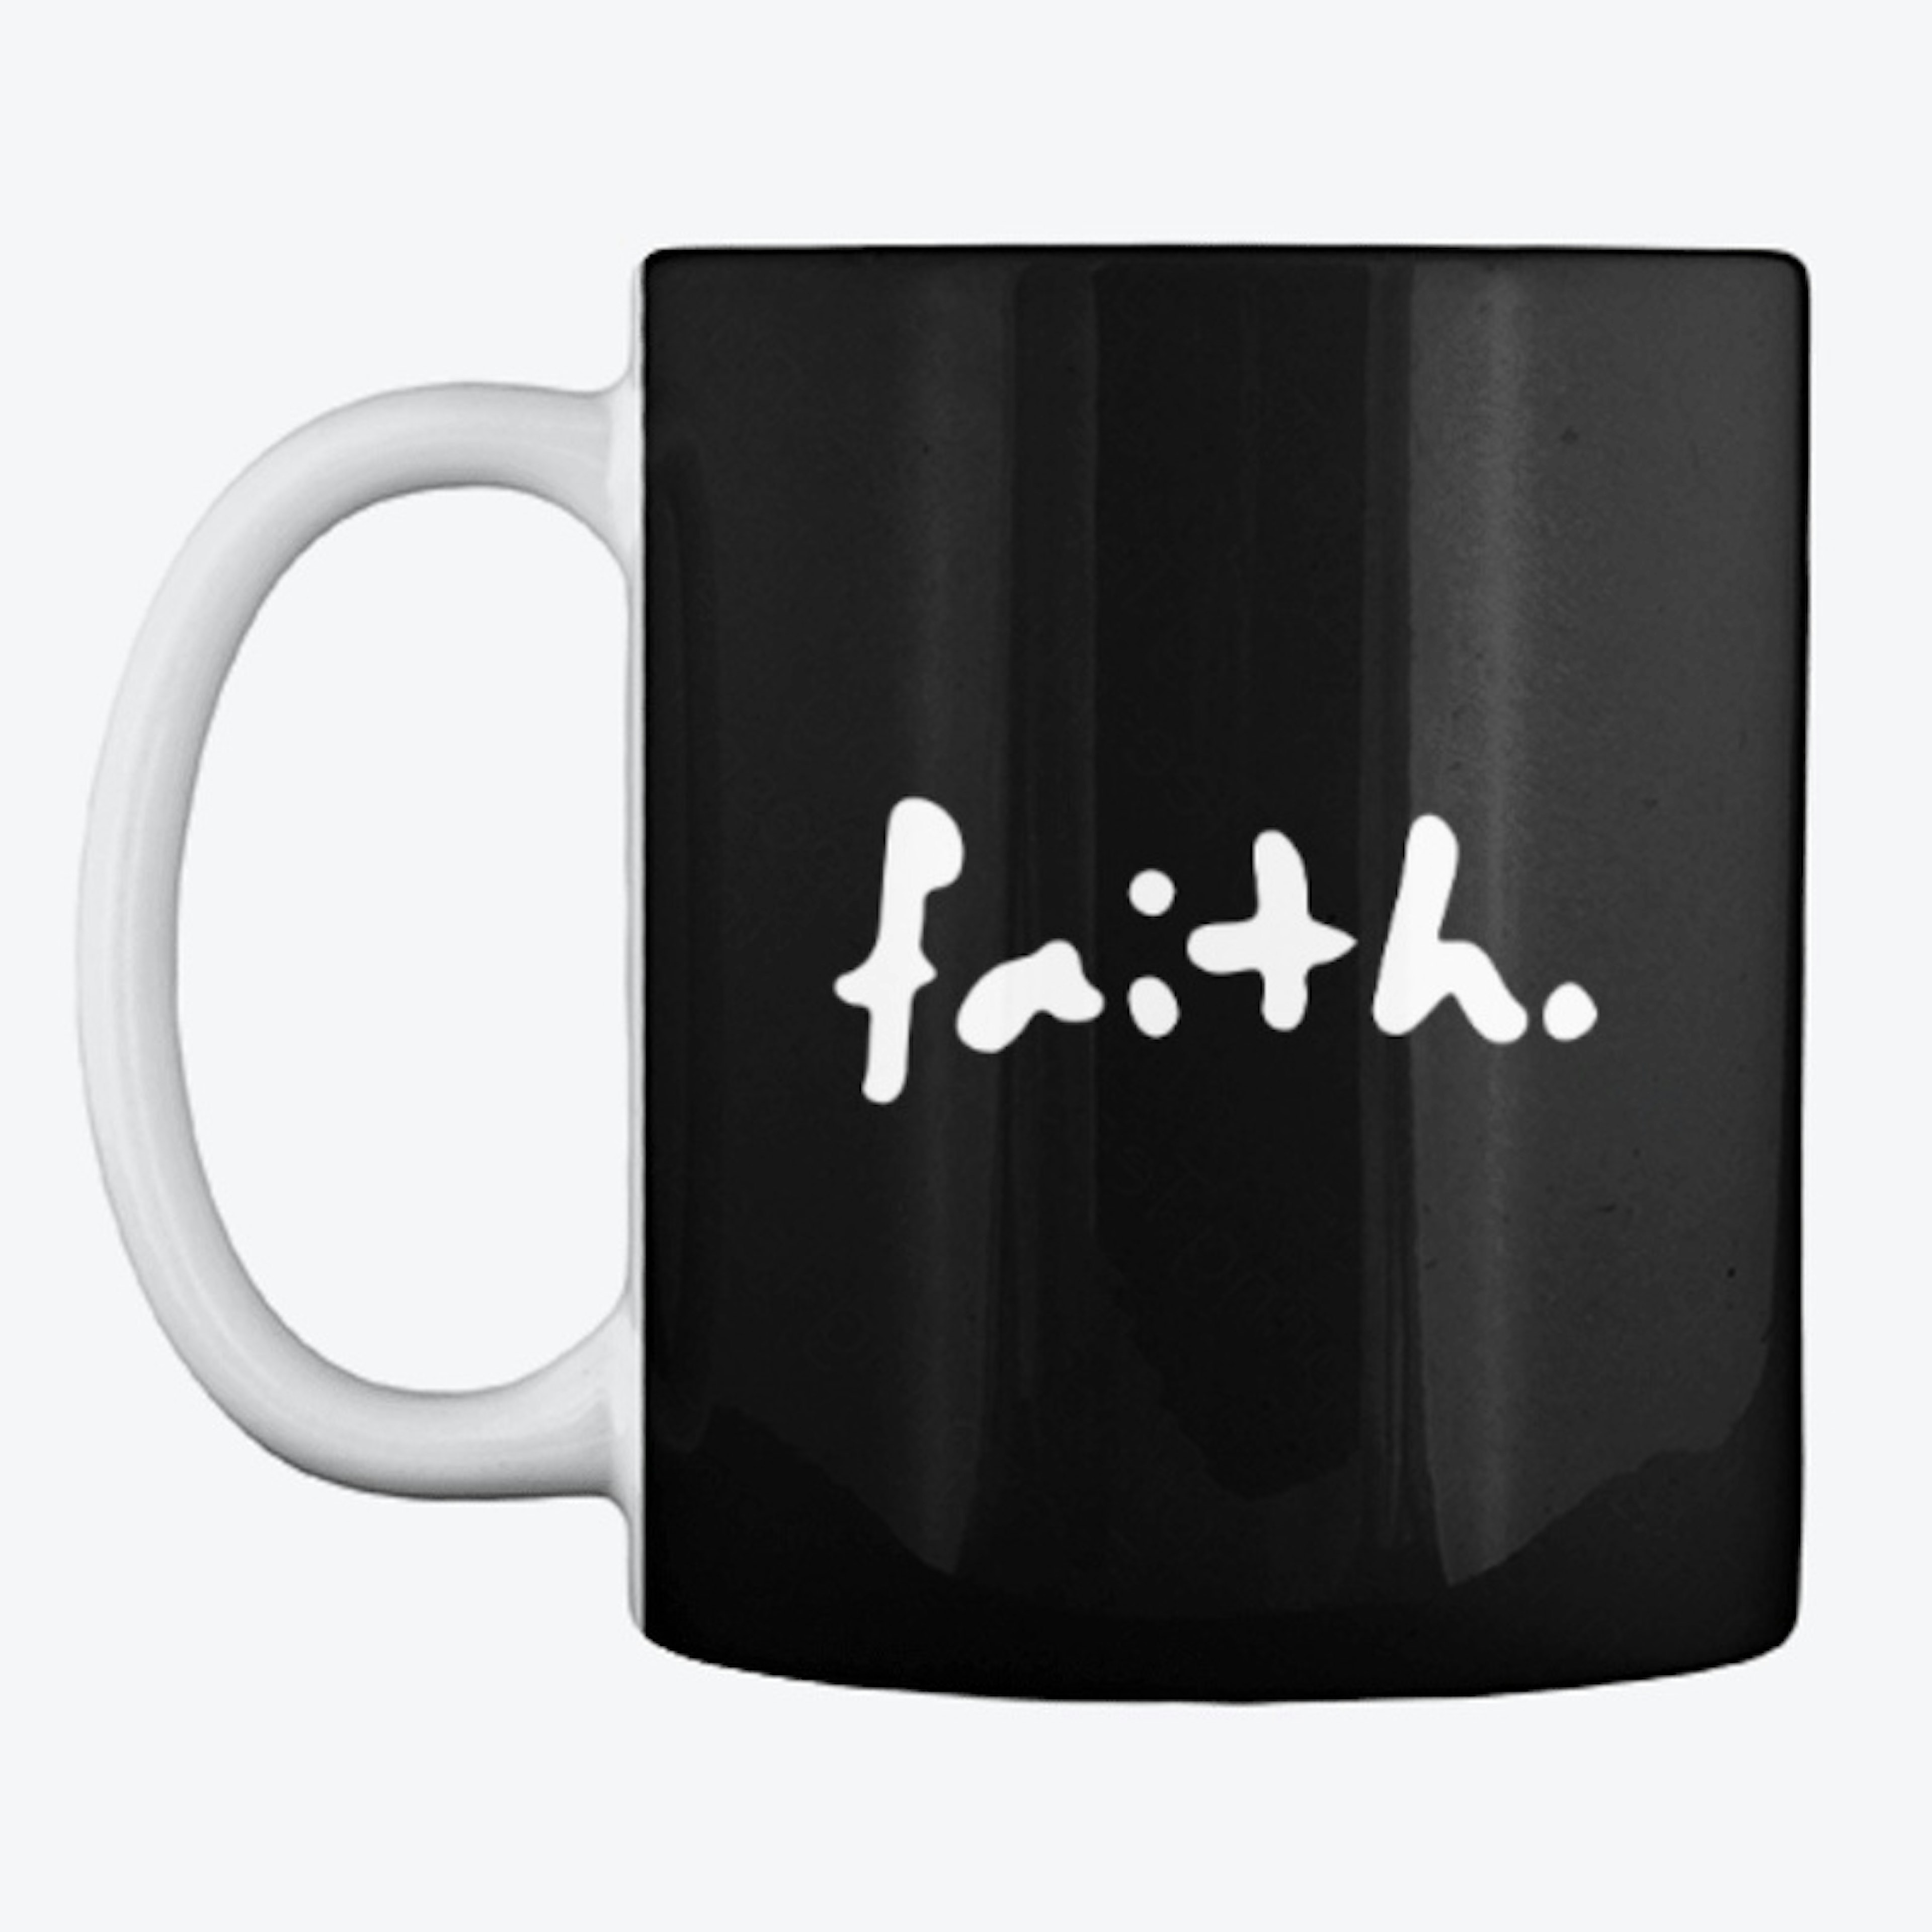 Faith.